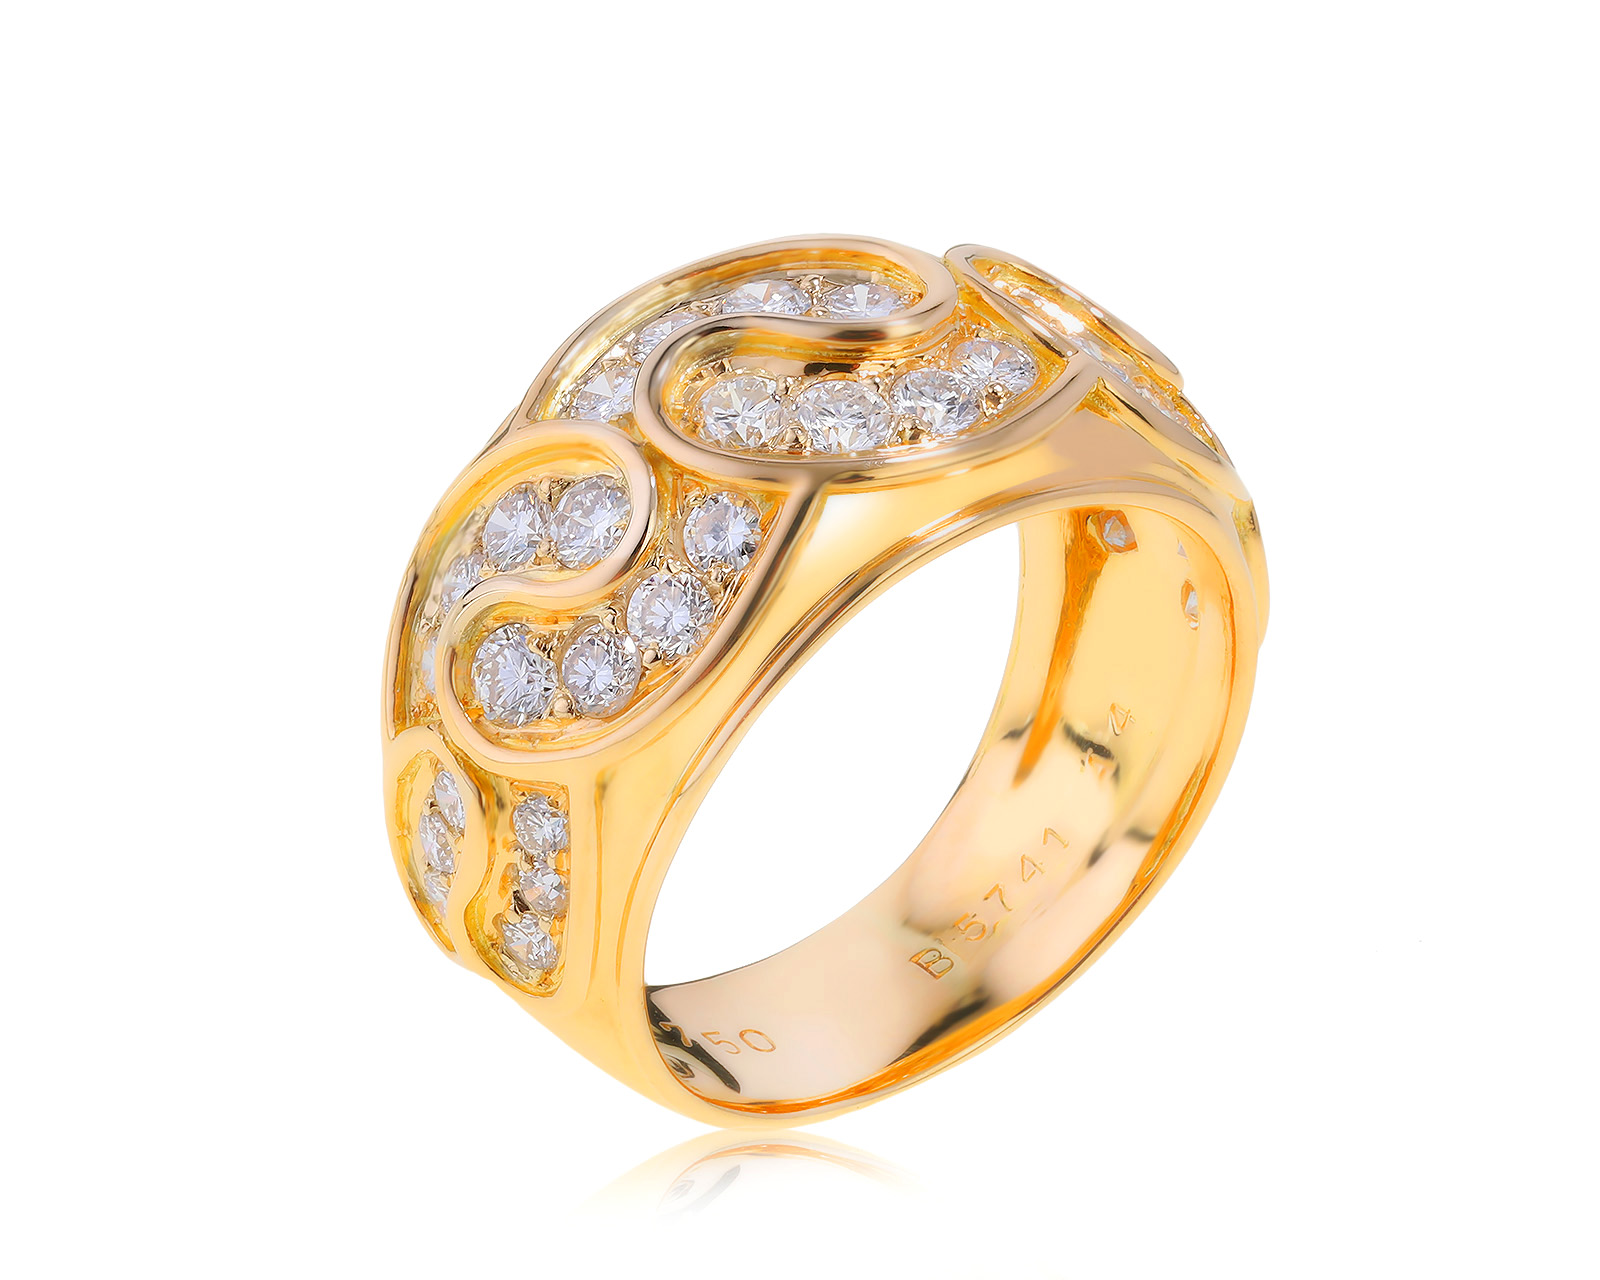 Оригинальное золотое кольцо Van Cleef & Arpels 071121/4